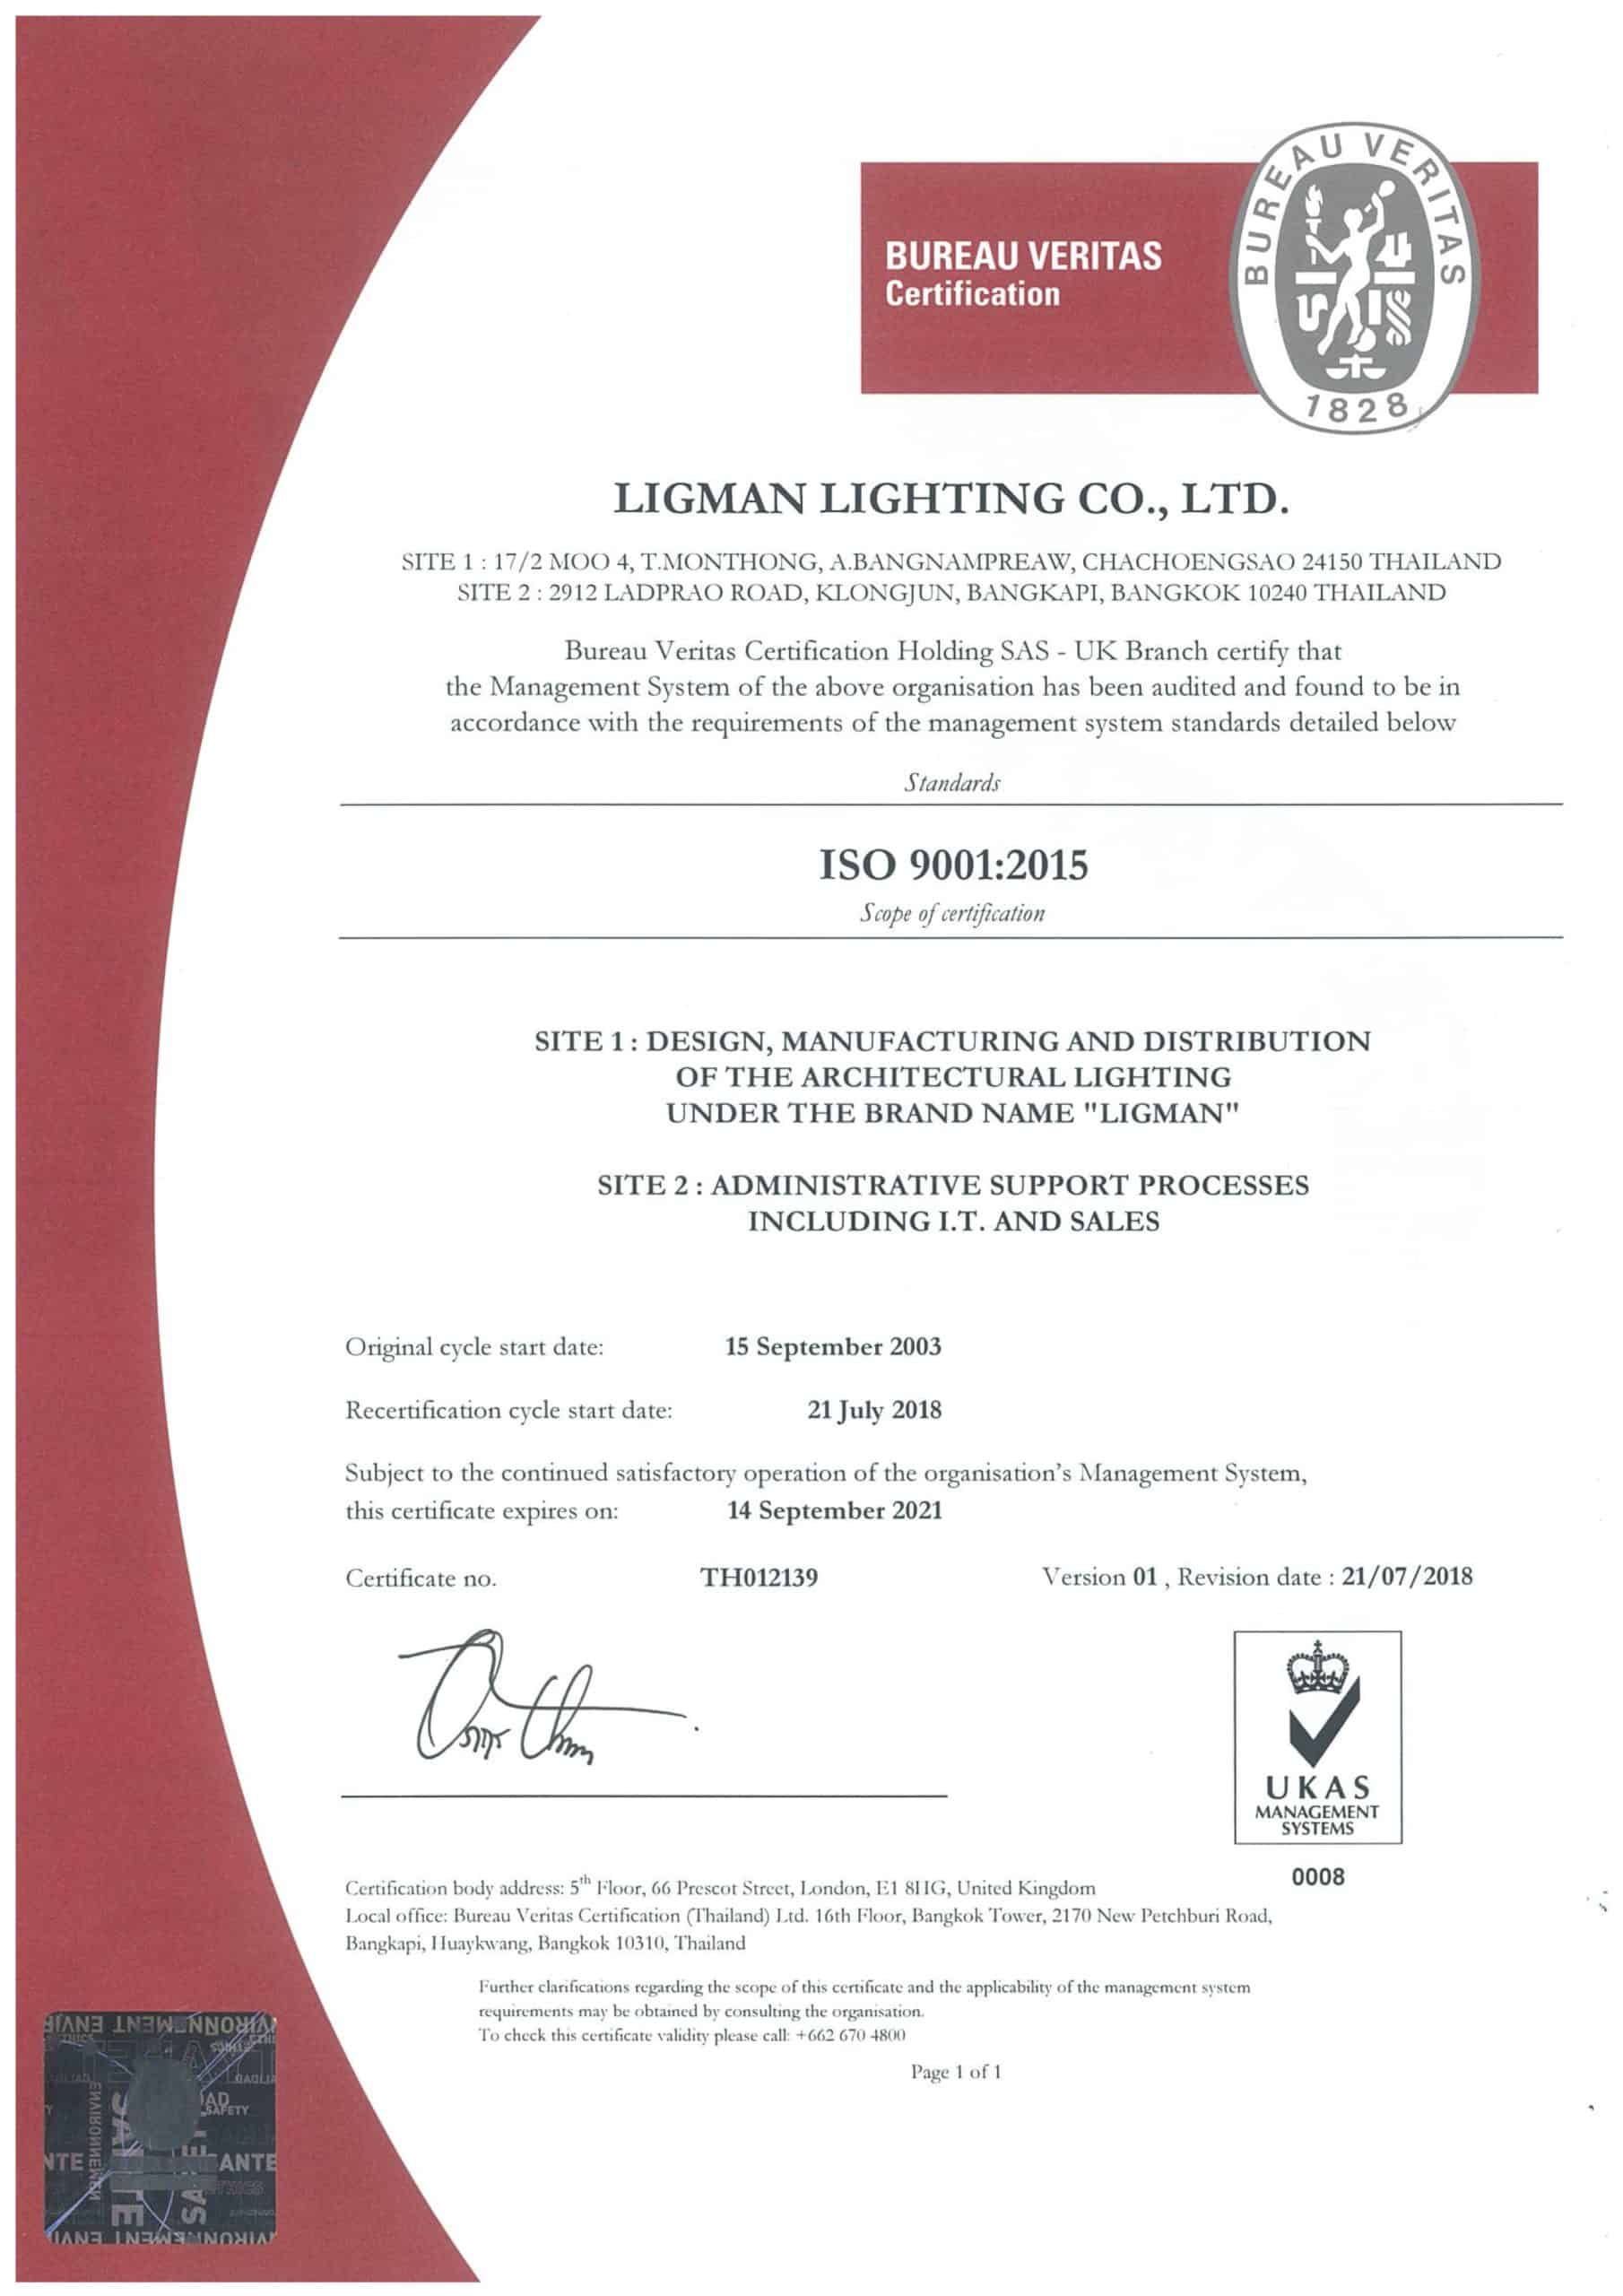 LLTH - ISO 9001